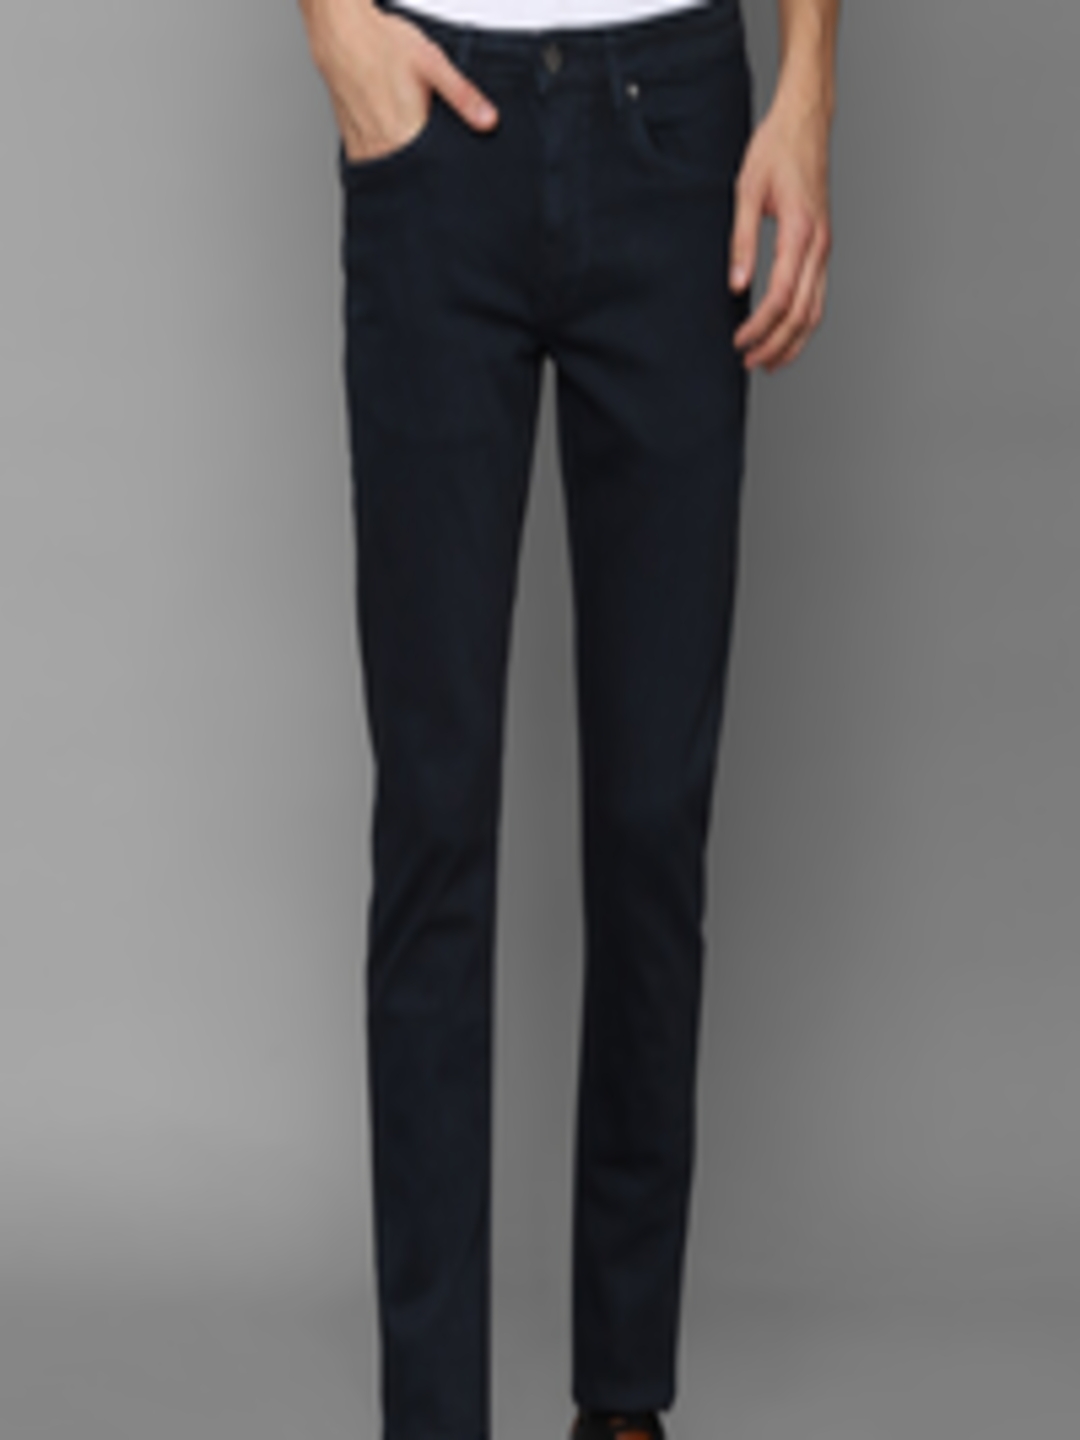 Buy Louis Philippe Jeans Men Navy Blue Slim Fit Jeans - Jeans for Men ...